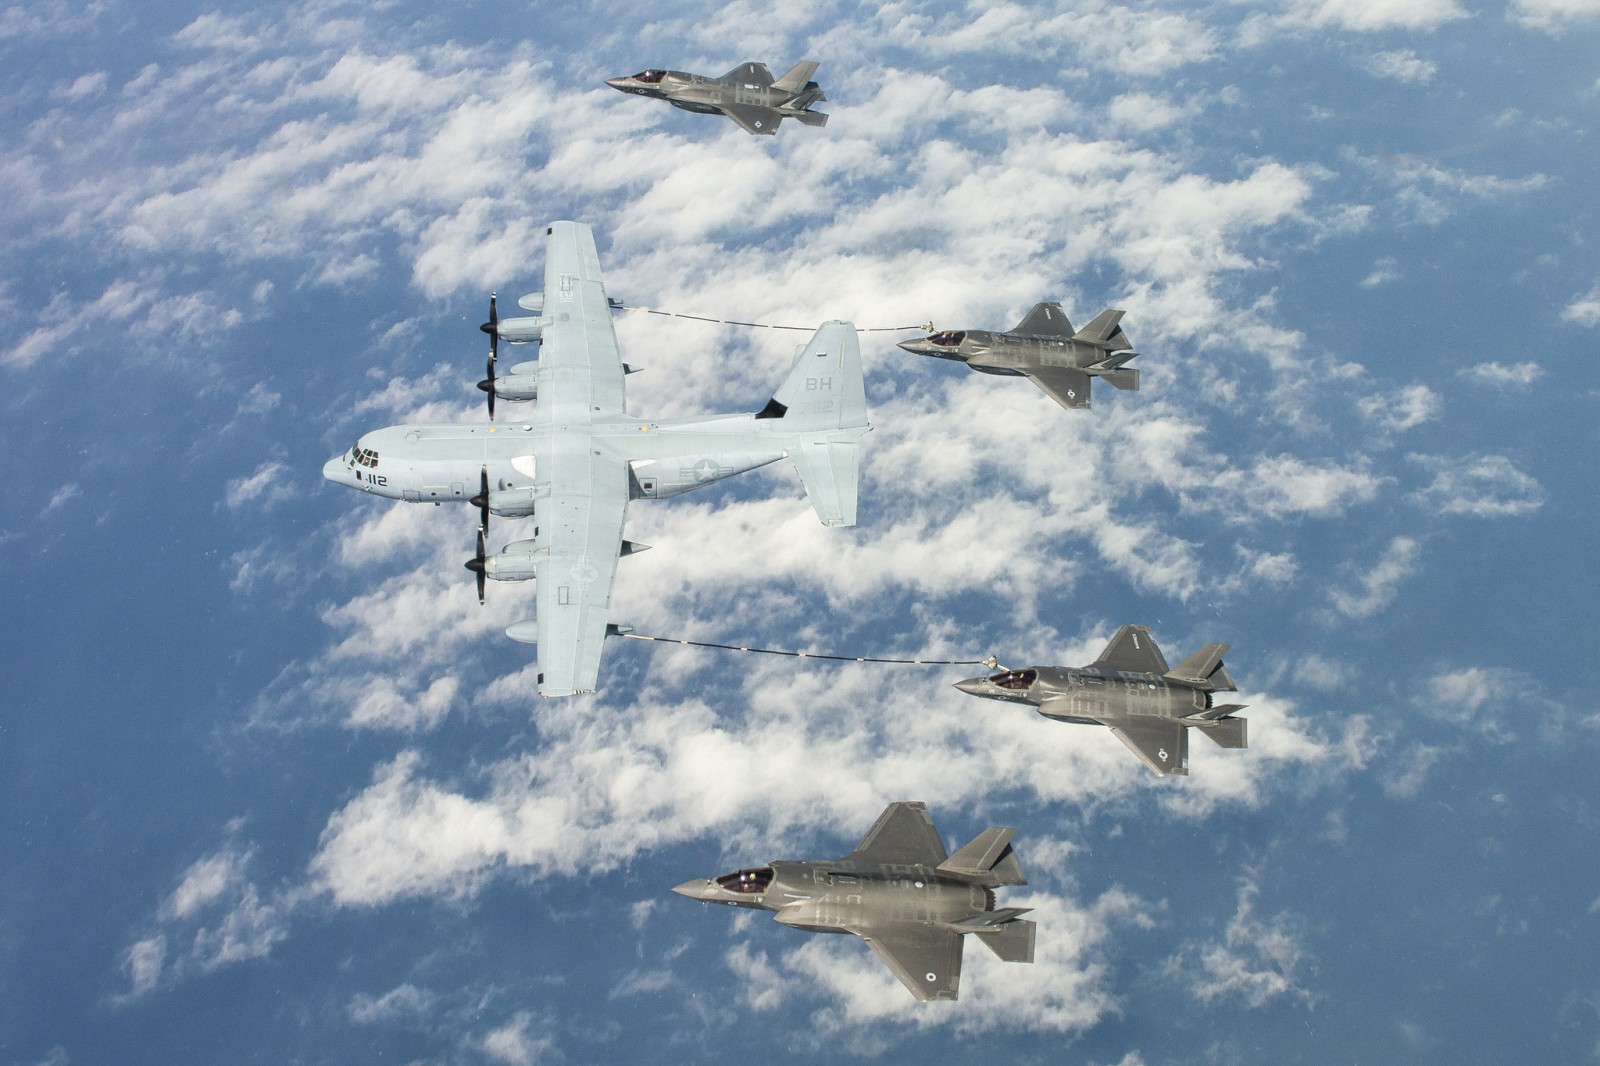 เครื่องบิน, นักมวย, เครื่องบินทิ้งระเบิด, การขนส่งทางทหาร, F-35B, Super Hercules, C-130J